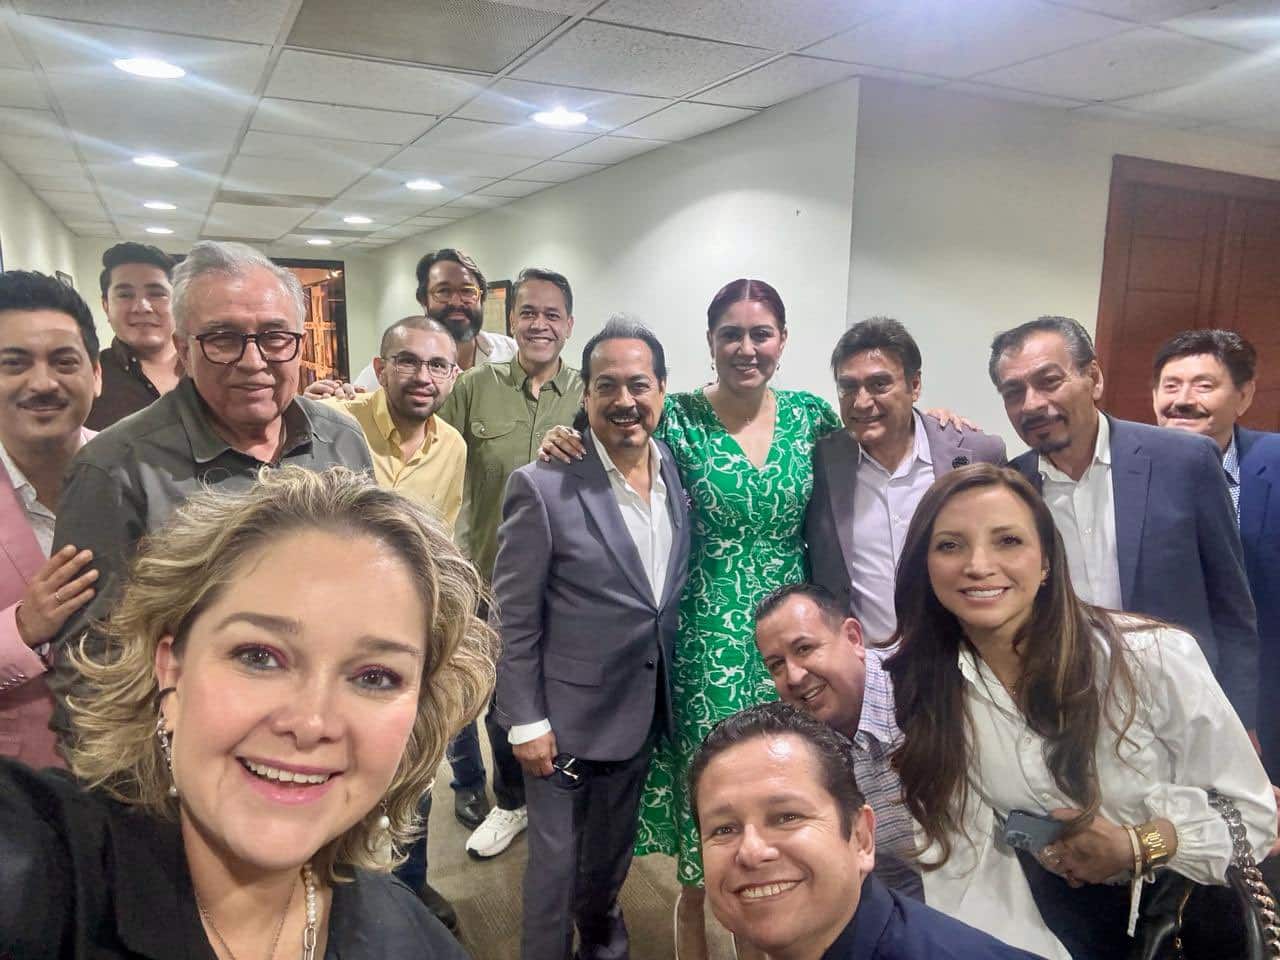 Los Tigres del Norte junto a Rubén Rocha Moya, Eneyda Rocha Ruiz, María Elizalde Ruelas, Enrique Díaz Vega, y otros miembros del gabinete